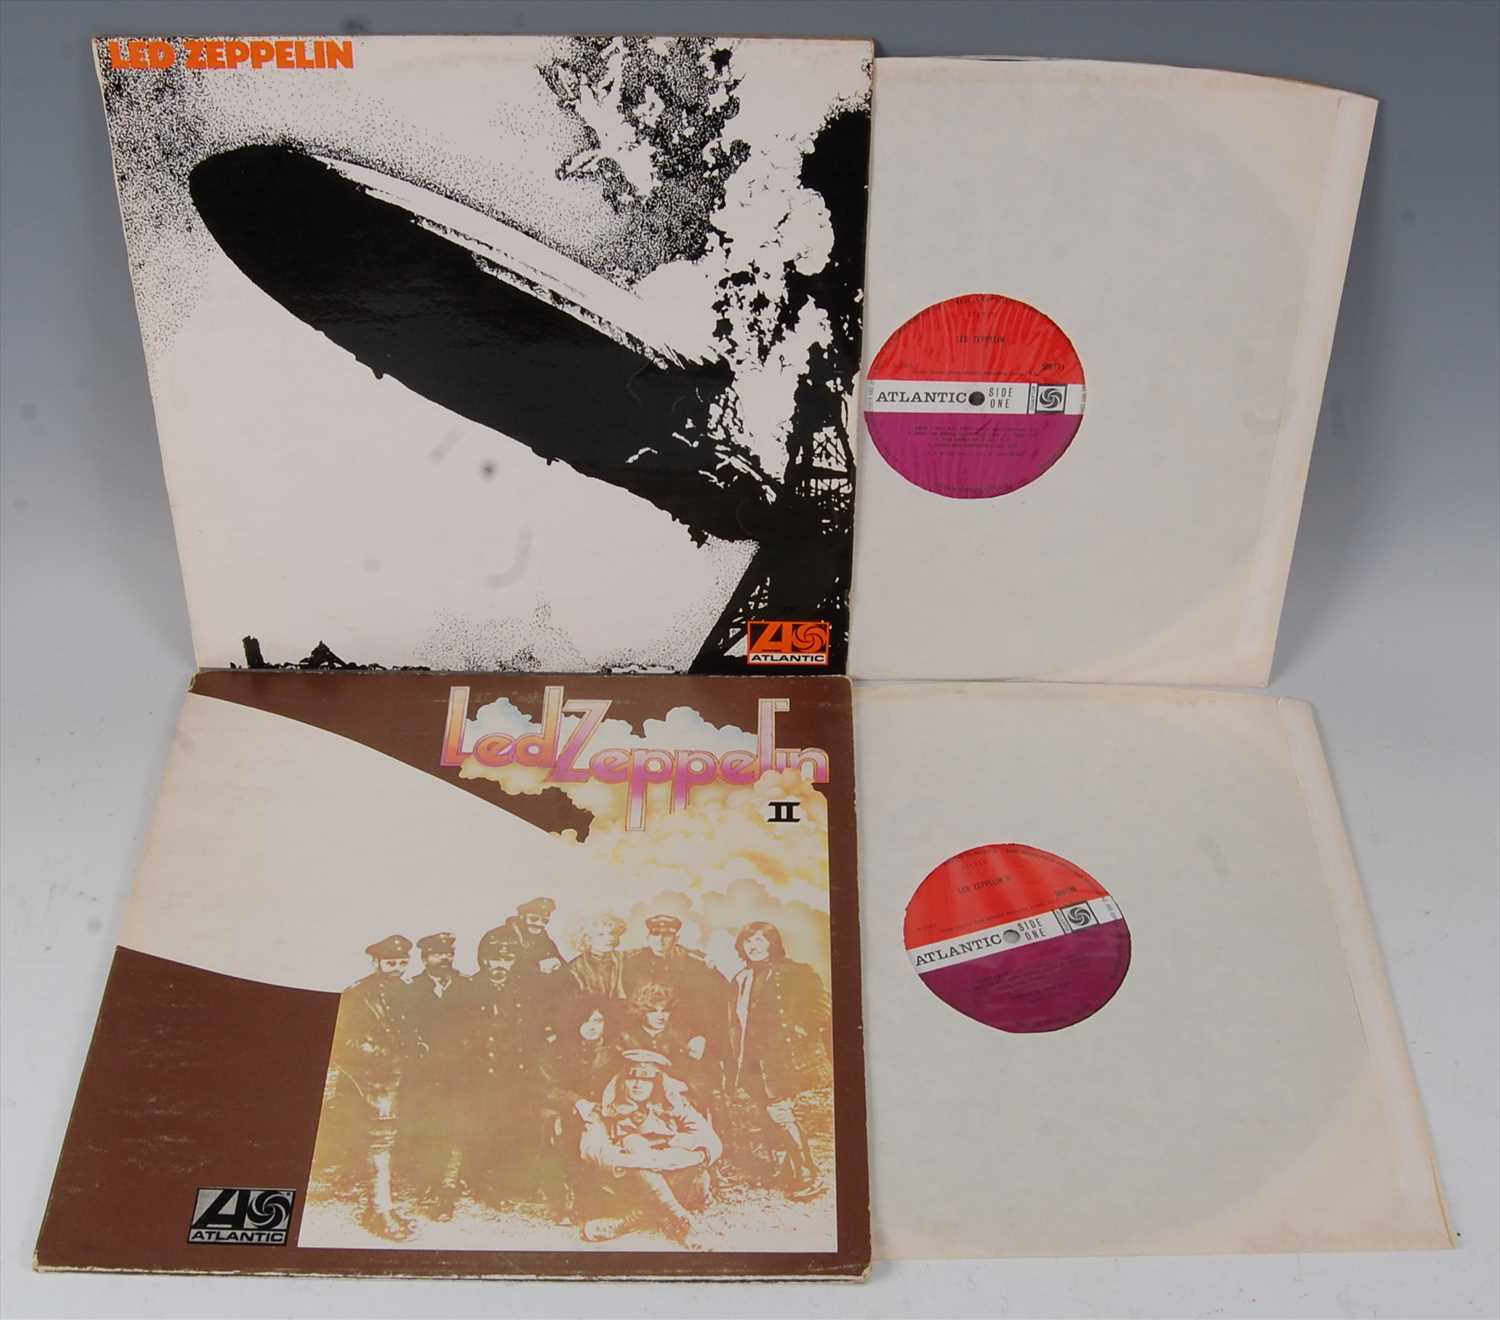 Lot 554 - Led Zeppelin, Led Zeppelin I